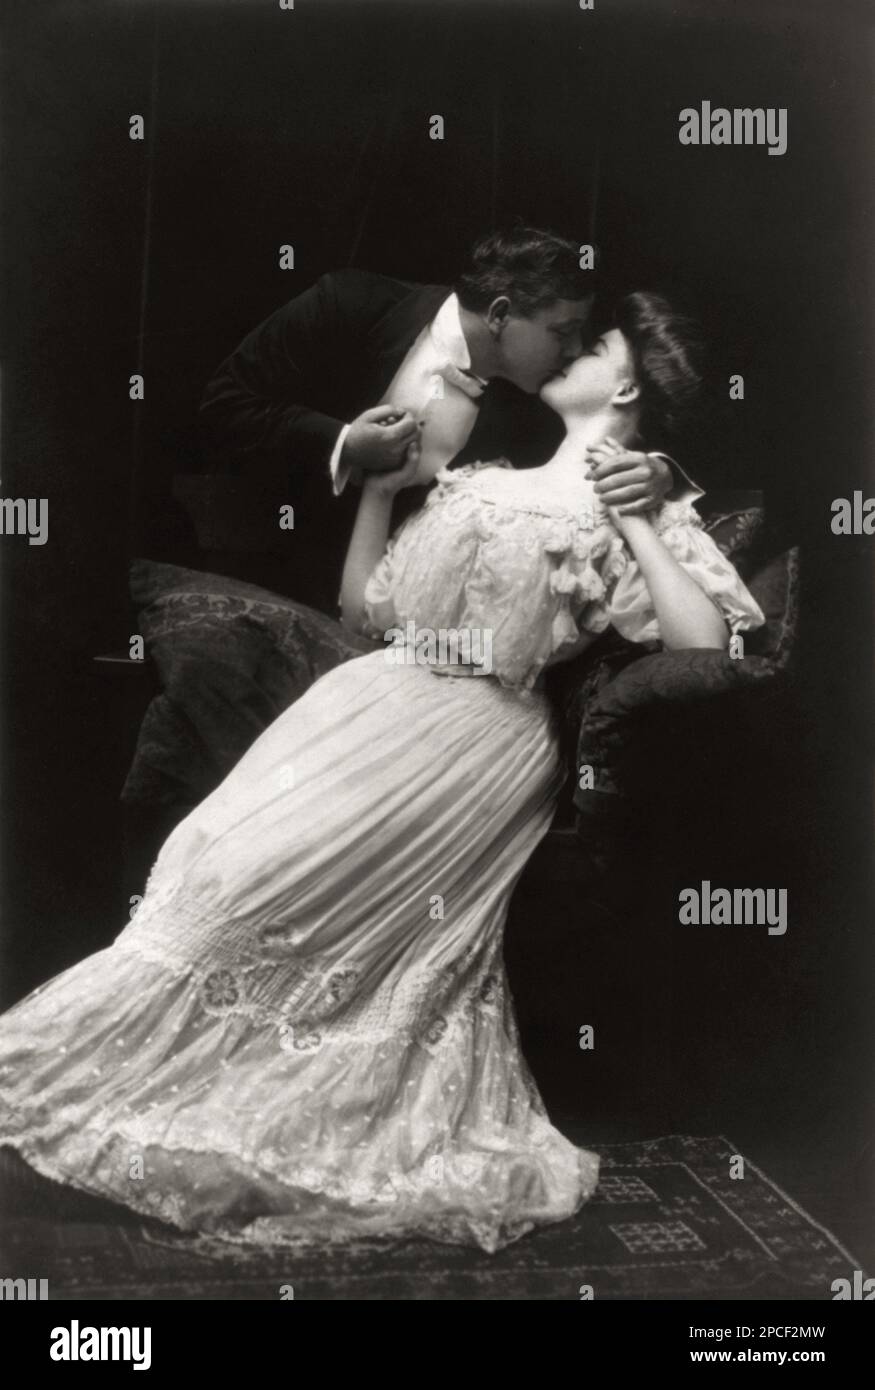 1909, USA:' Un bacio d'anima'. L'uomo e la donna baciano . Foto di un noto fotografo americano. - KISS - BACIO - BACIARE - CORTEGGIAMENTO - CORTEGGIAMENTO - AMORE - AMORE - LOVEERS - AMANTI - FIDANZATI - SAN VALENTINO - SAN VALENTINO - SENTIMENTALE - SENSIBILE - ROMANTICO - ROMANTICO - ROMANTICO - FOTO STORICHE - FOTO STORICHE - - NOVECENTO - '900 - MODA - Moda - profilo - colletto - colletto - cravatta - papillon - cravatta - decollette' - scrollatura - collana - RITRATTO - ritratto - pizzo - BELLE EPOQUE - mano nella mano - mani in mano ----- Archivio GBB Foto Stock